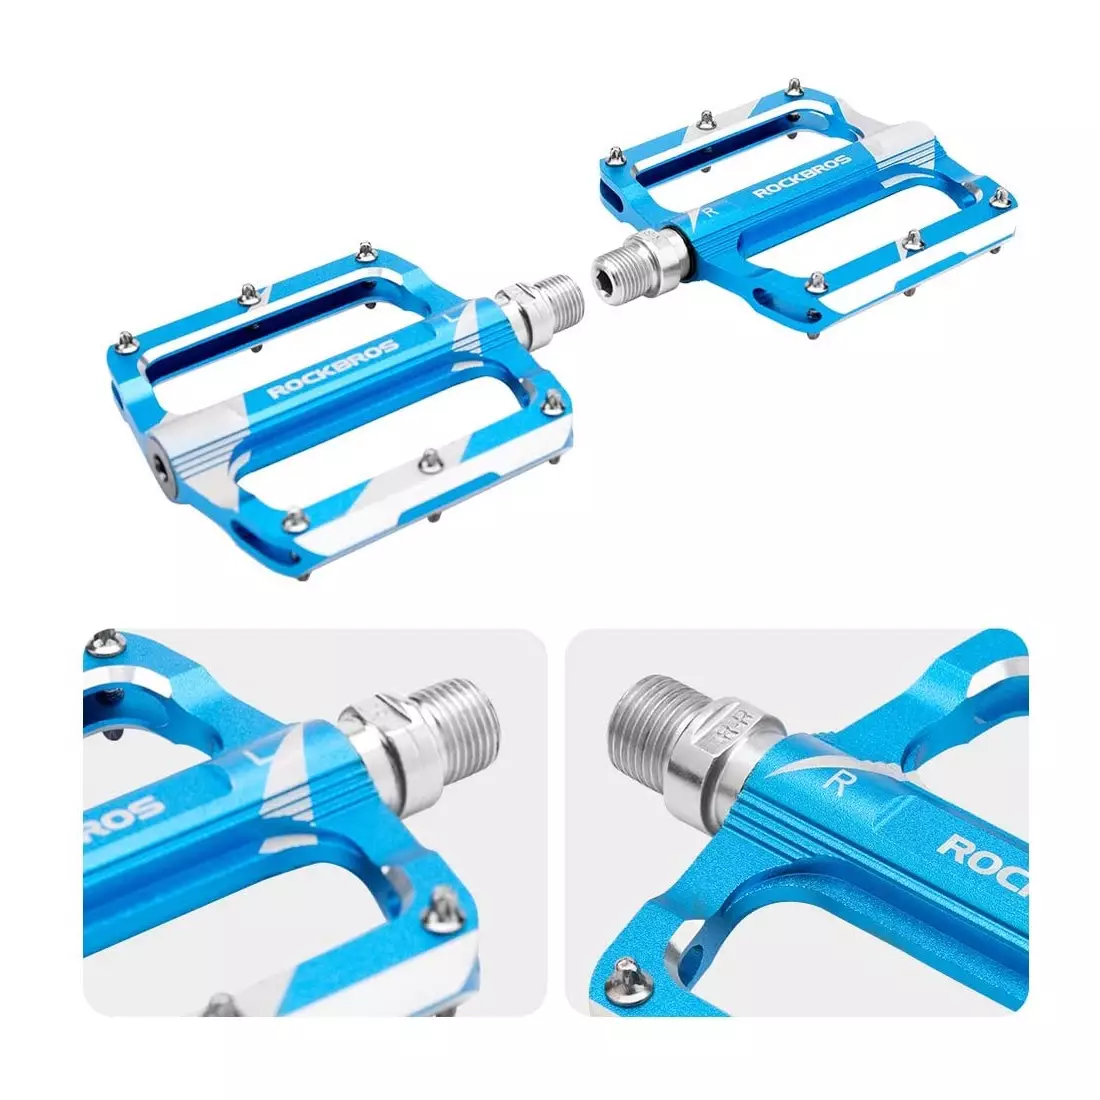 Rockbros pedale cu platformă din aluminiu, albastru K306-BL